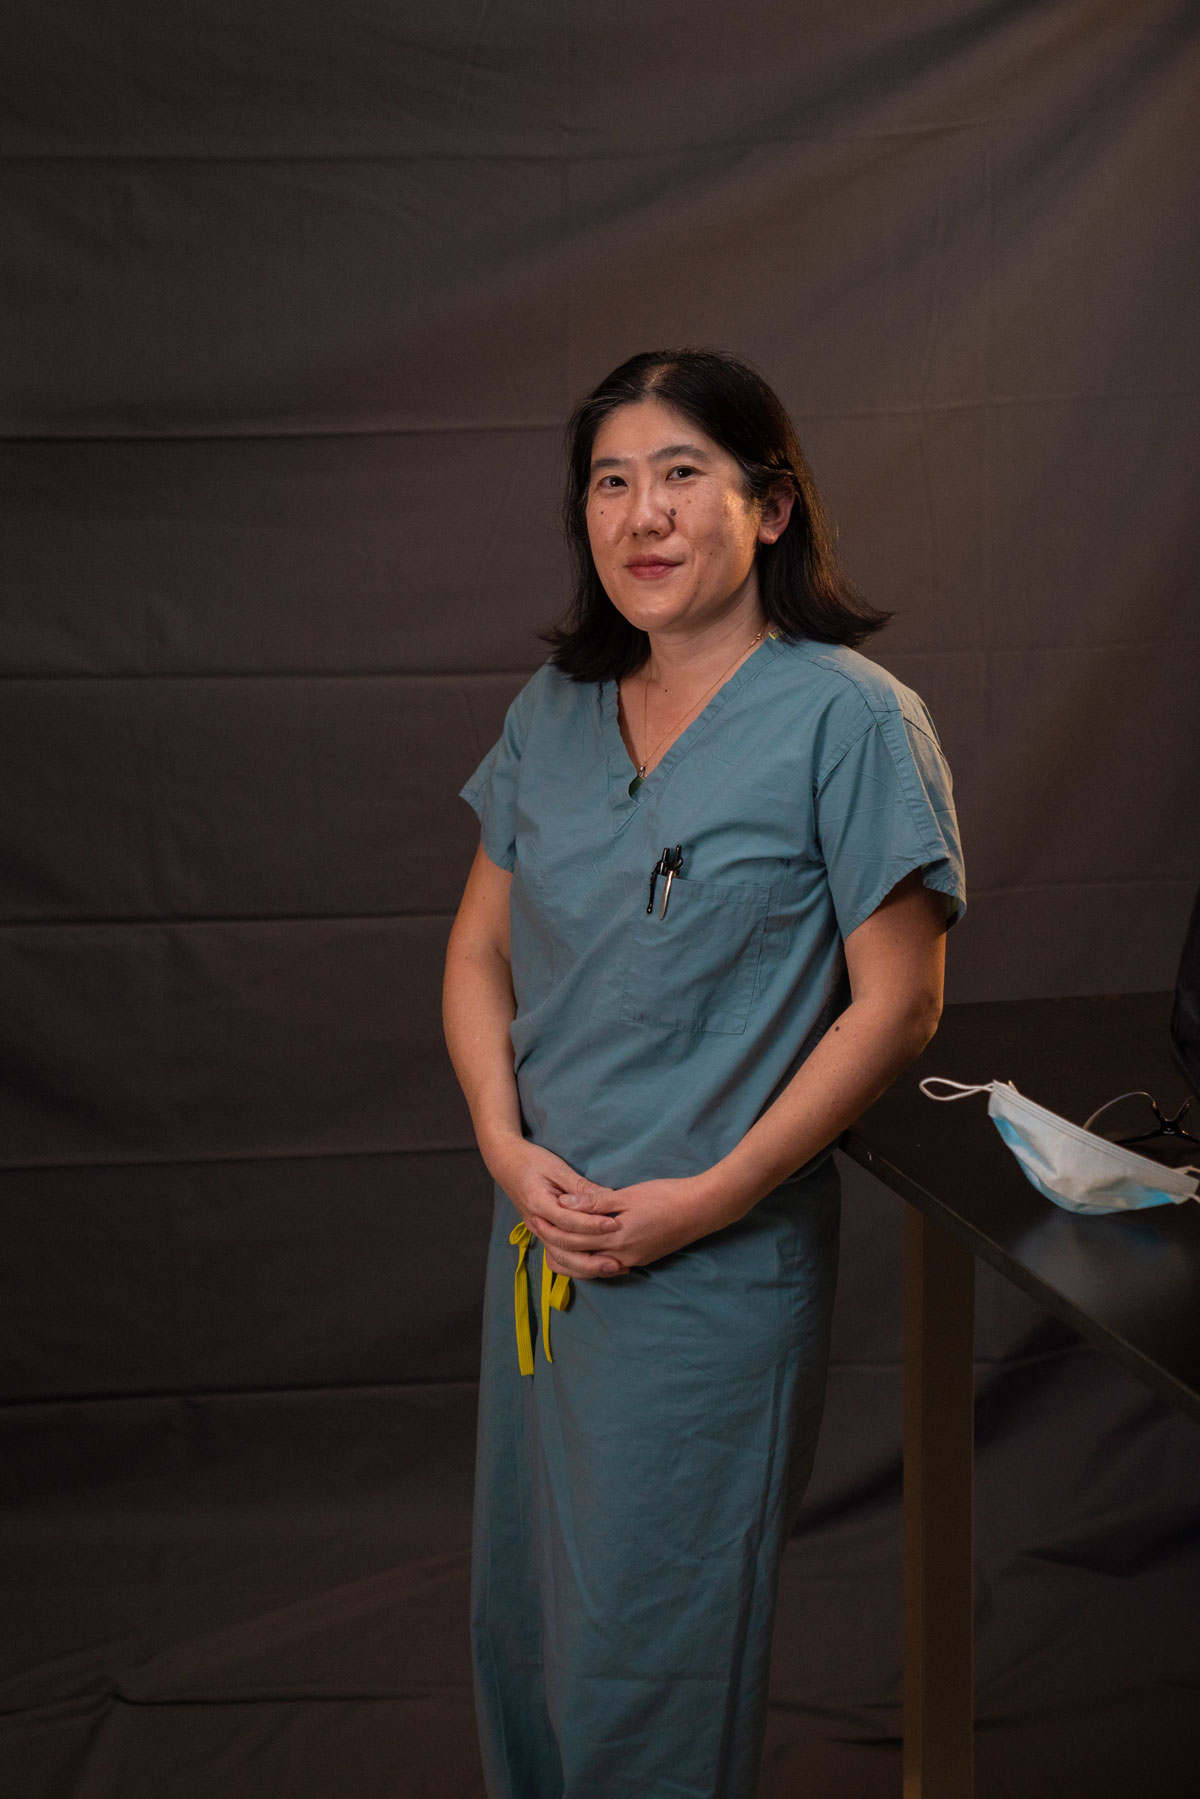 Dr. Tisha Wang